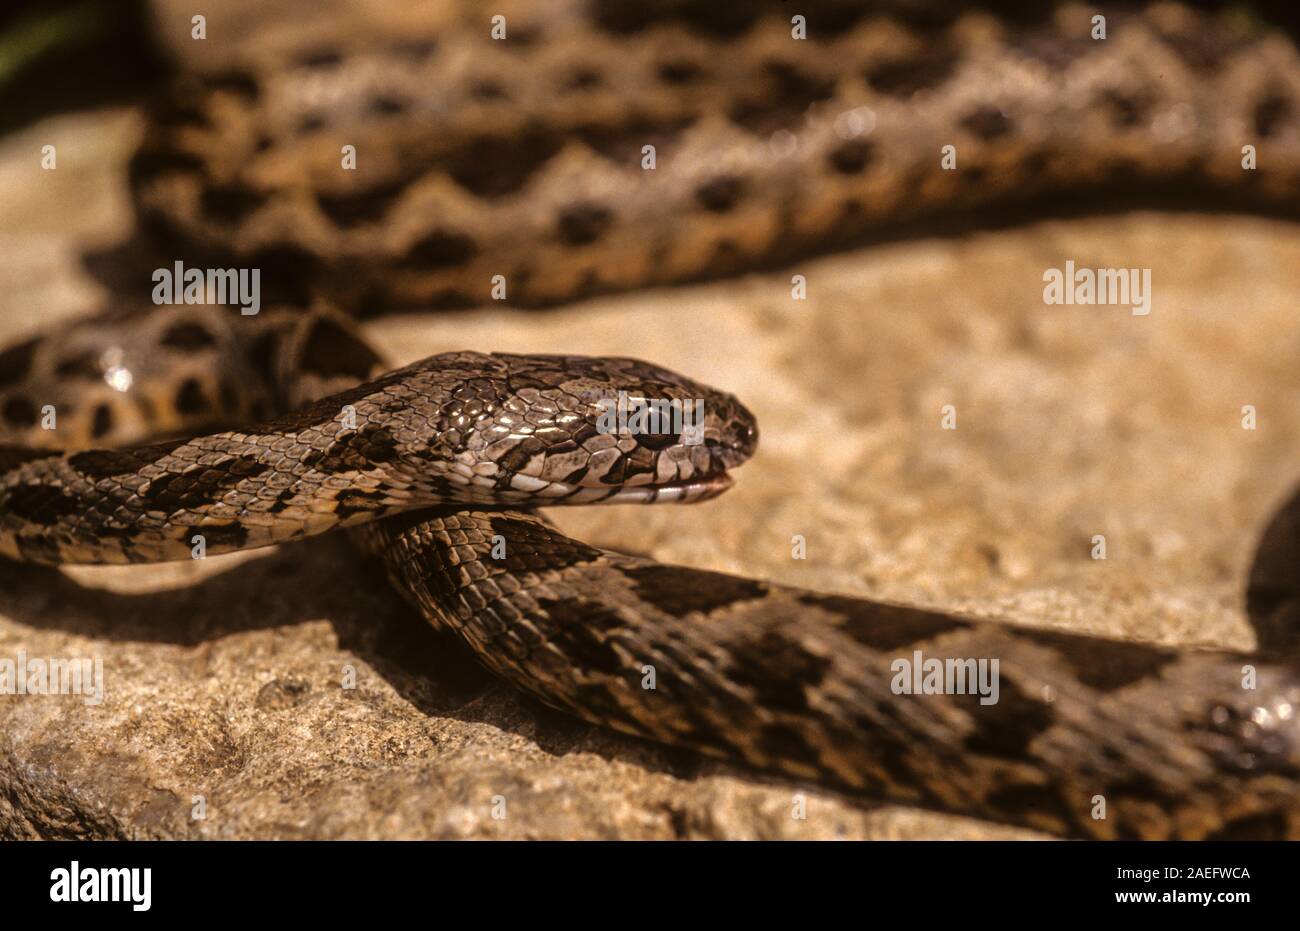 Coin-marked Snake (Hemorrhois nummifer syn Coluber nummifer) AKA Asian Racer or Coin snake. Photographed in Israel Stock Photo